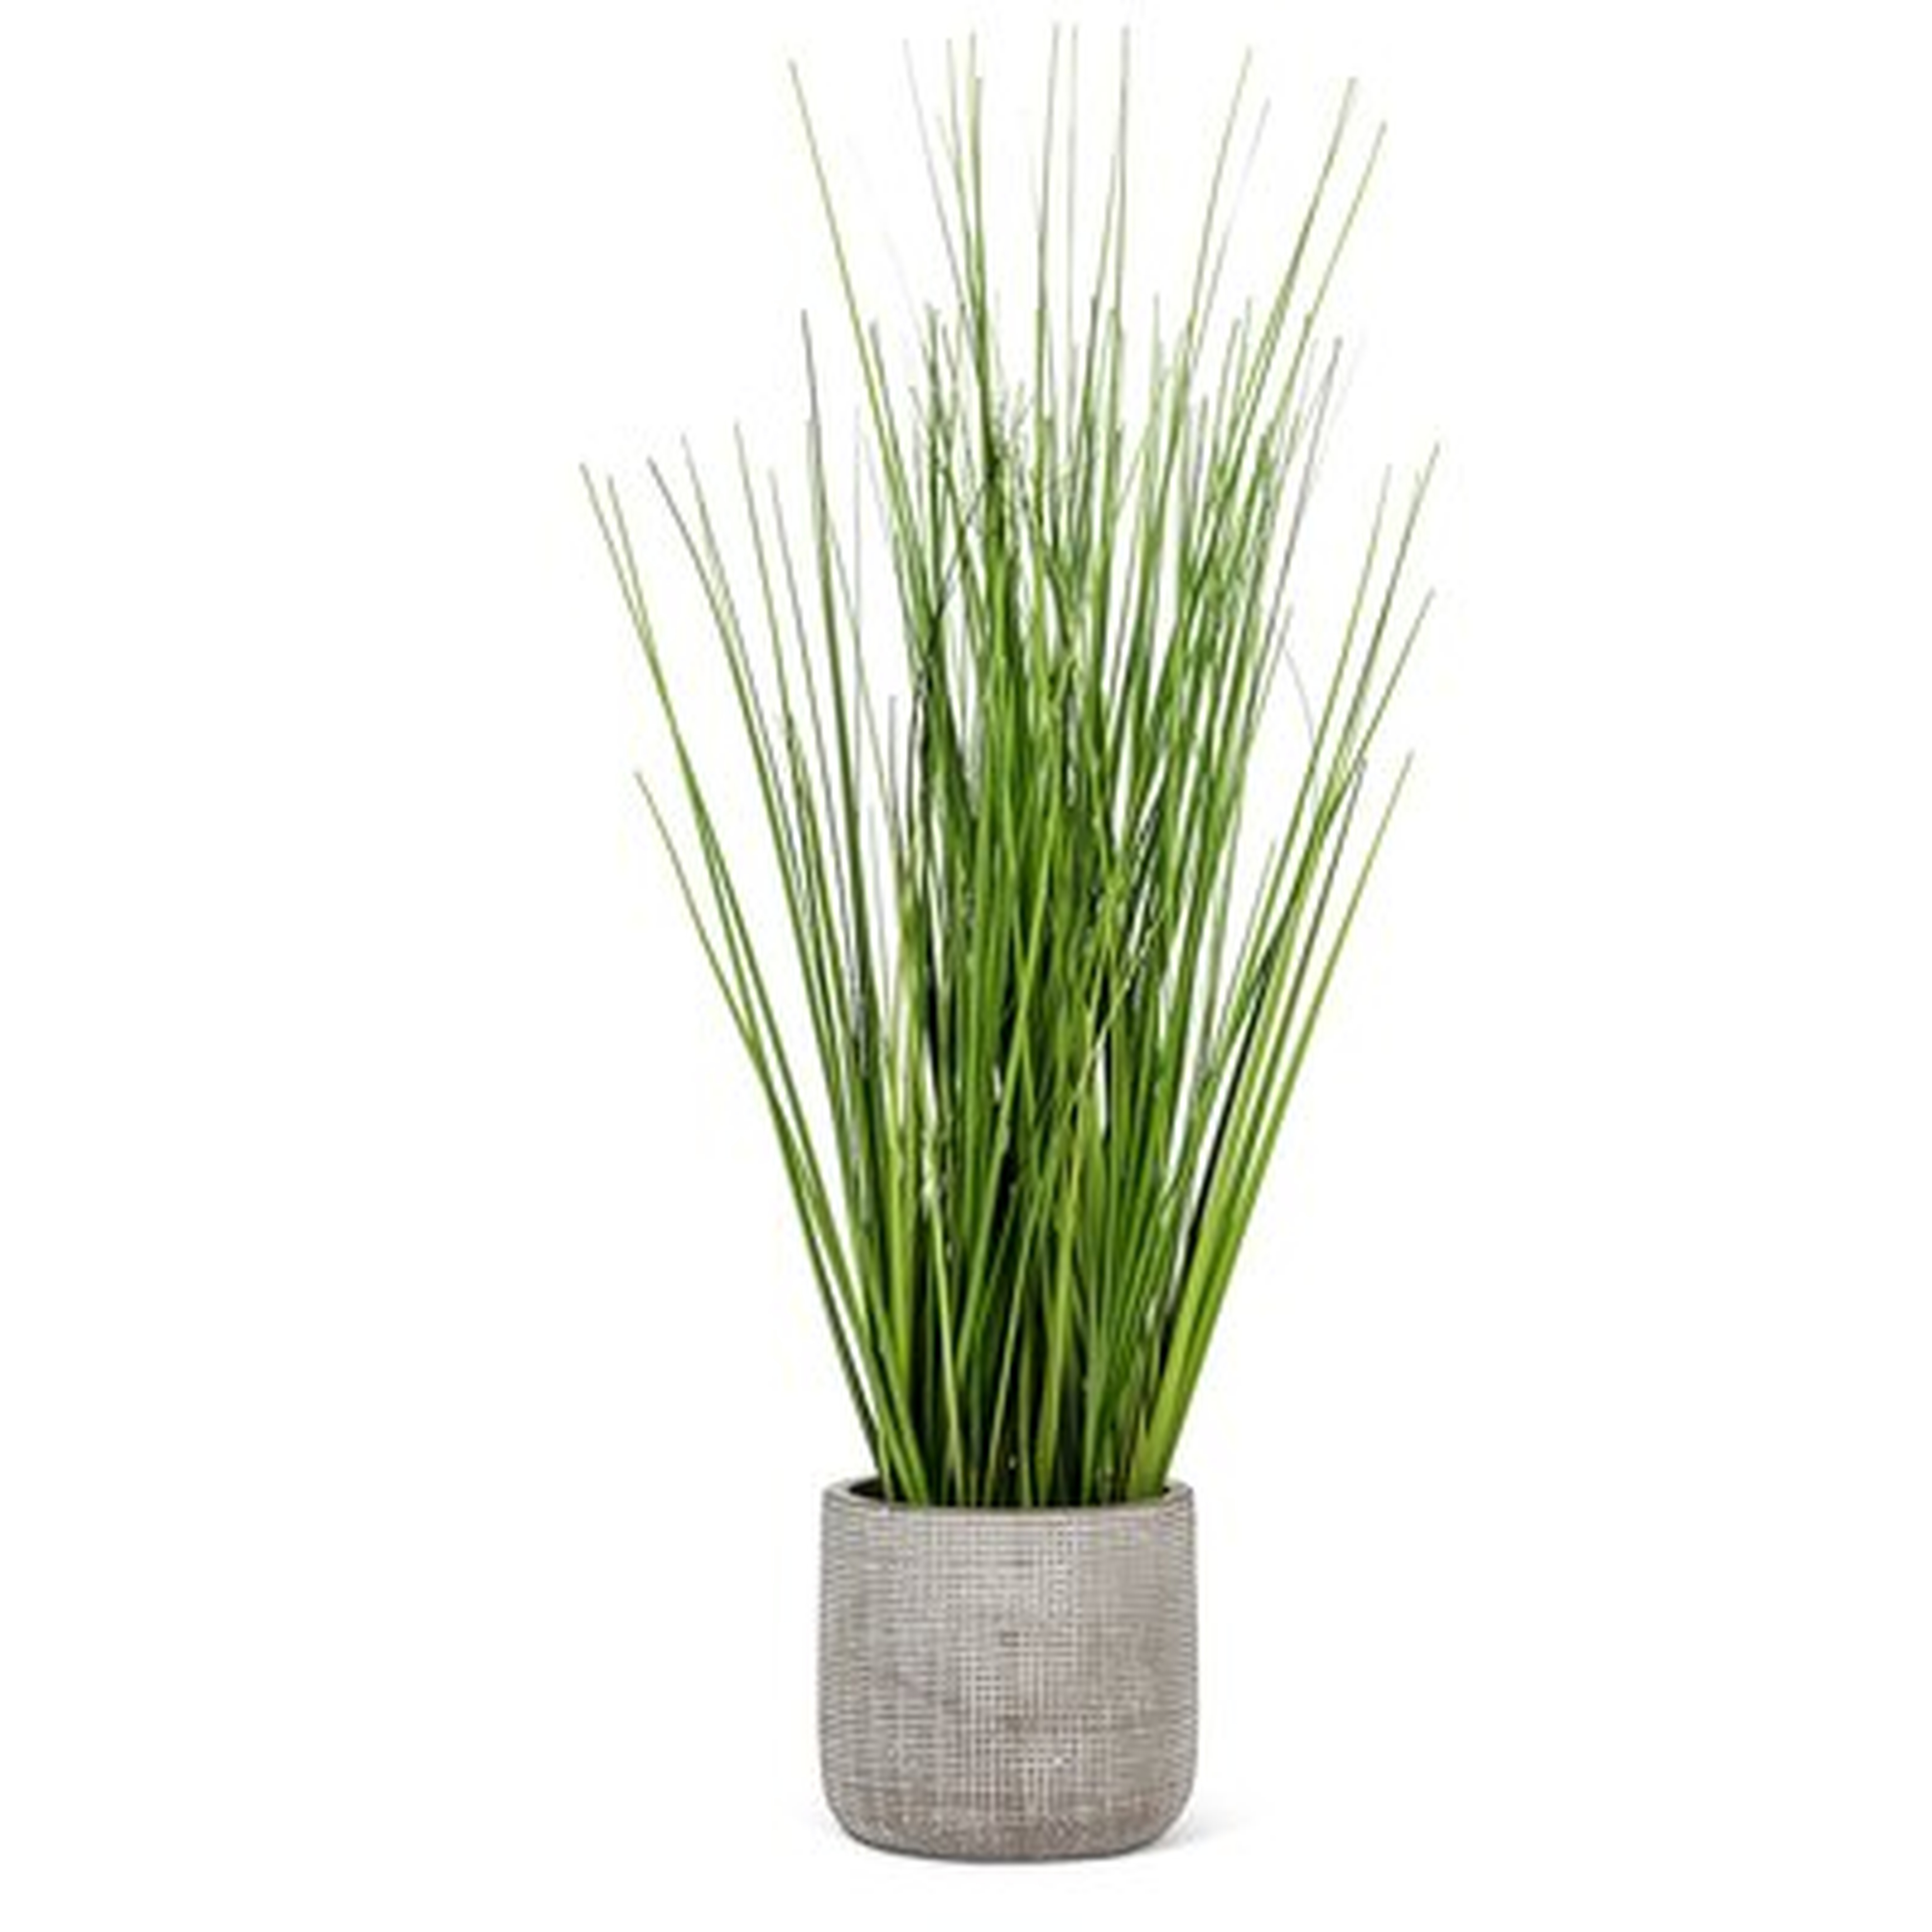 Tall Grass In Pot Plant - Wayfair